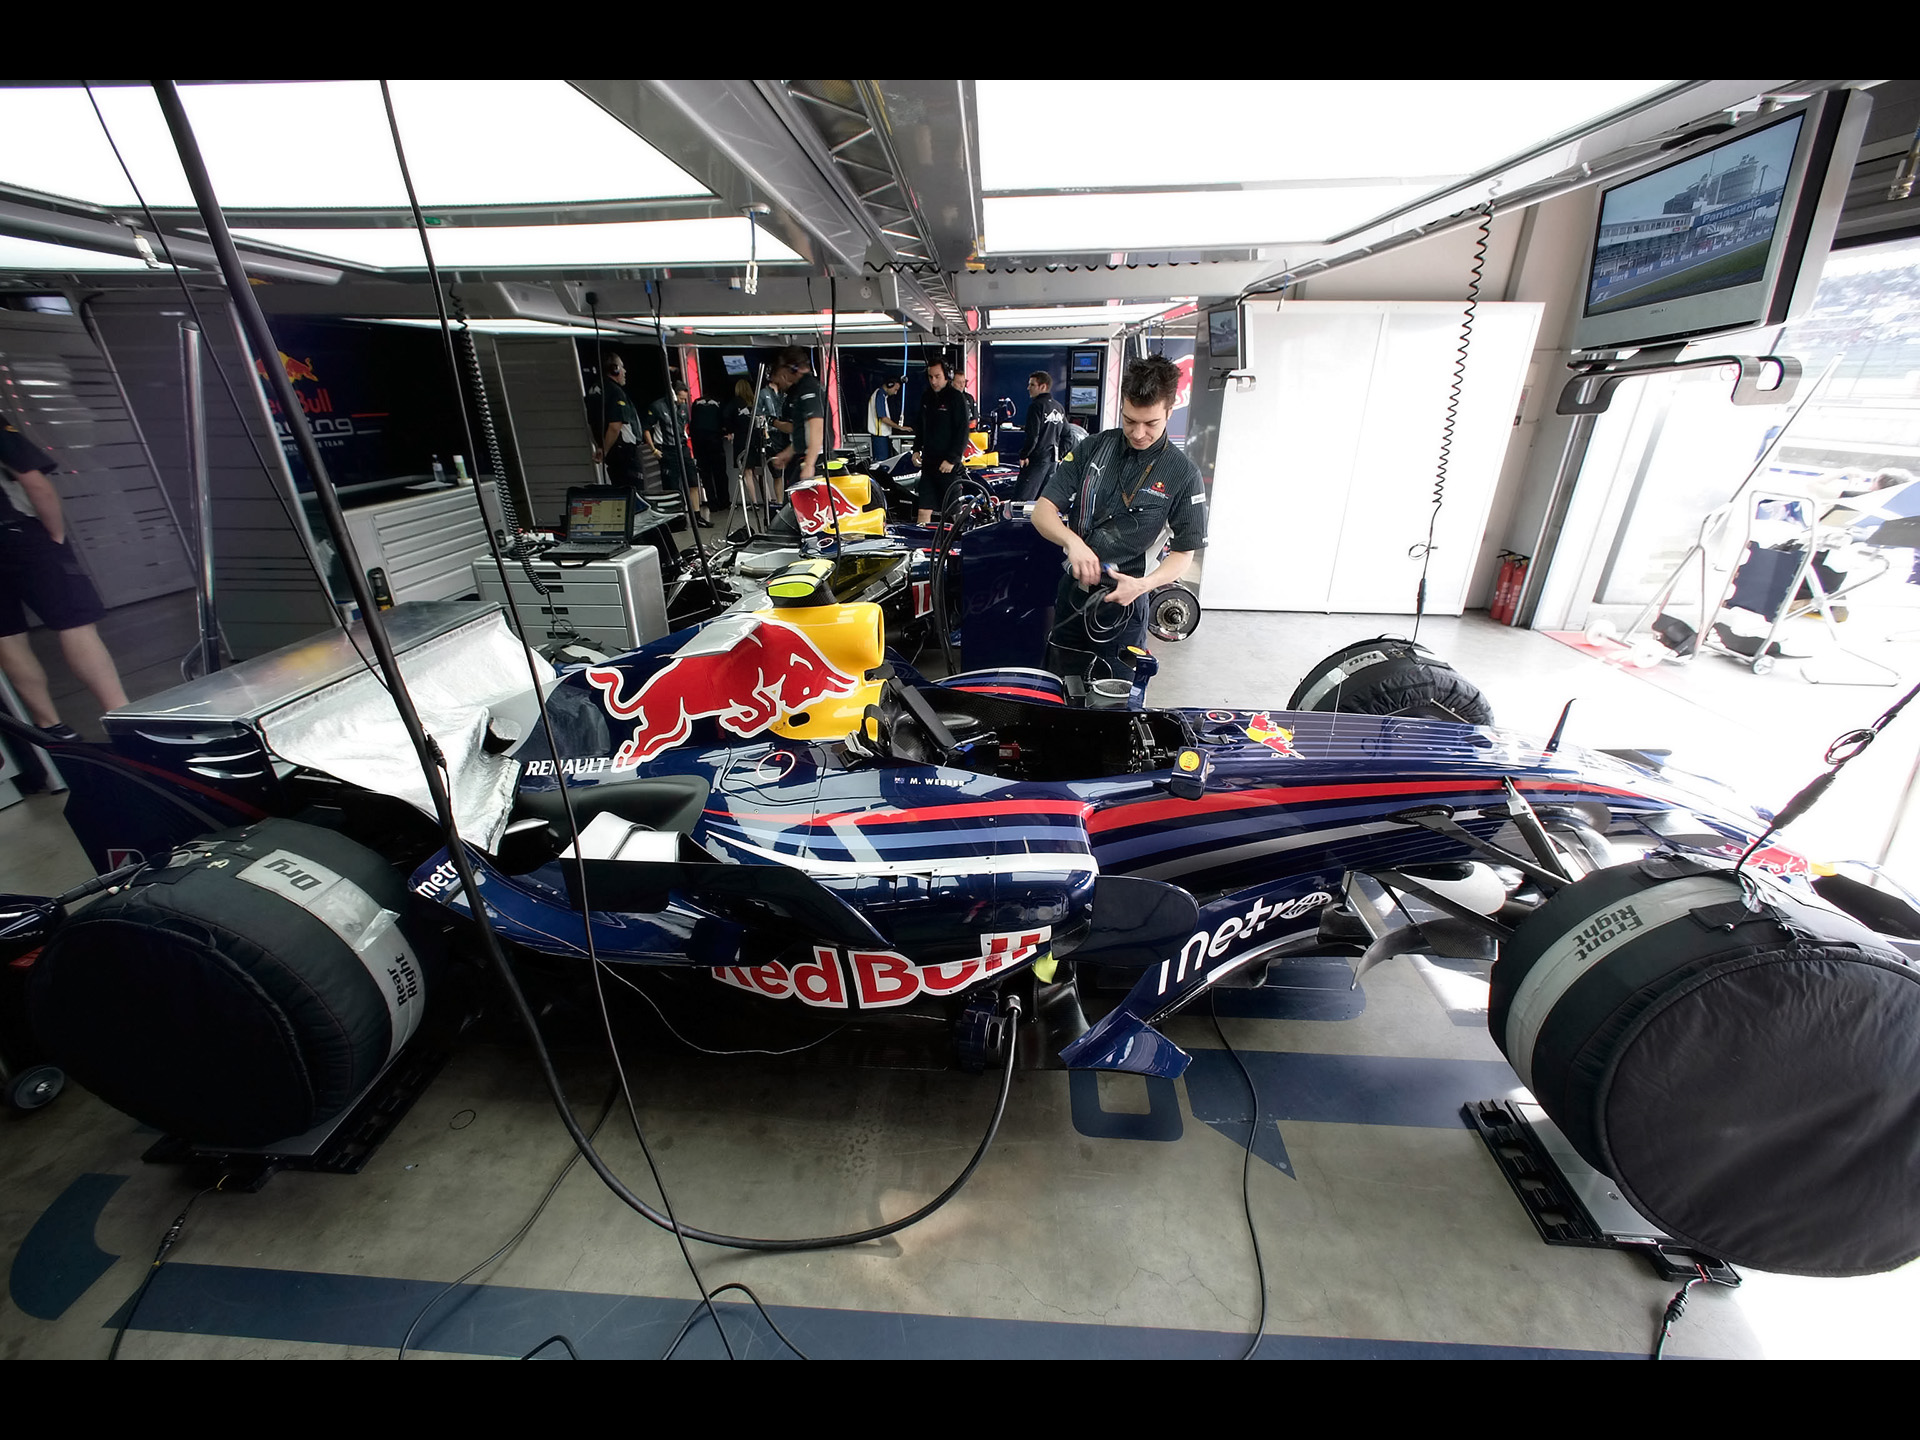 Red Bull F1 Car Garage